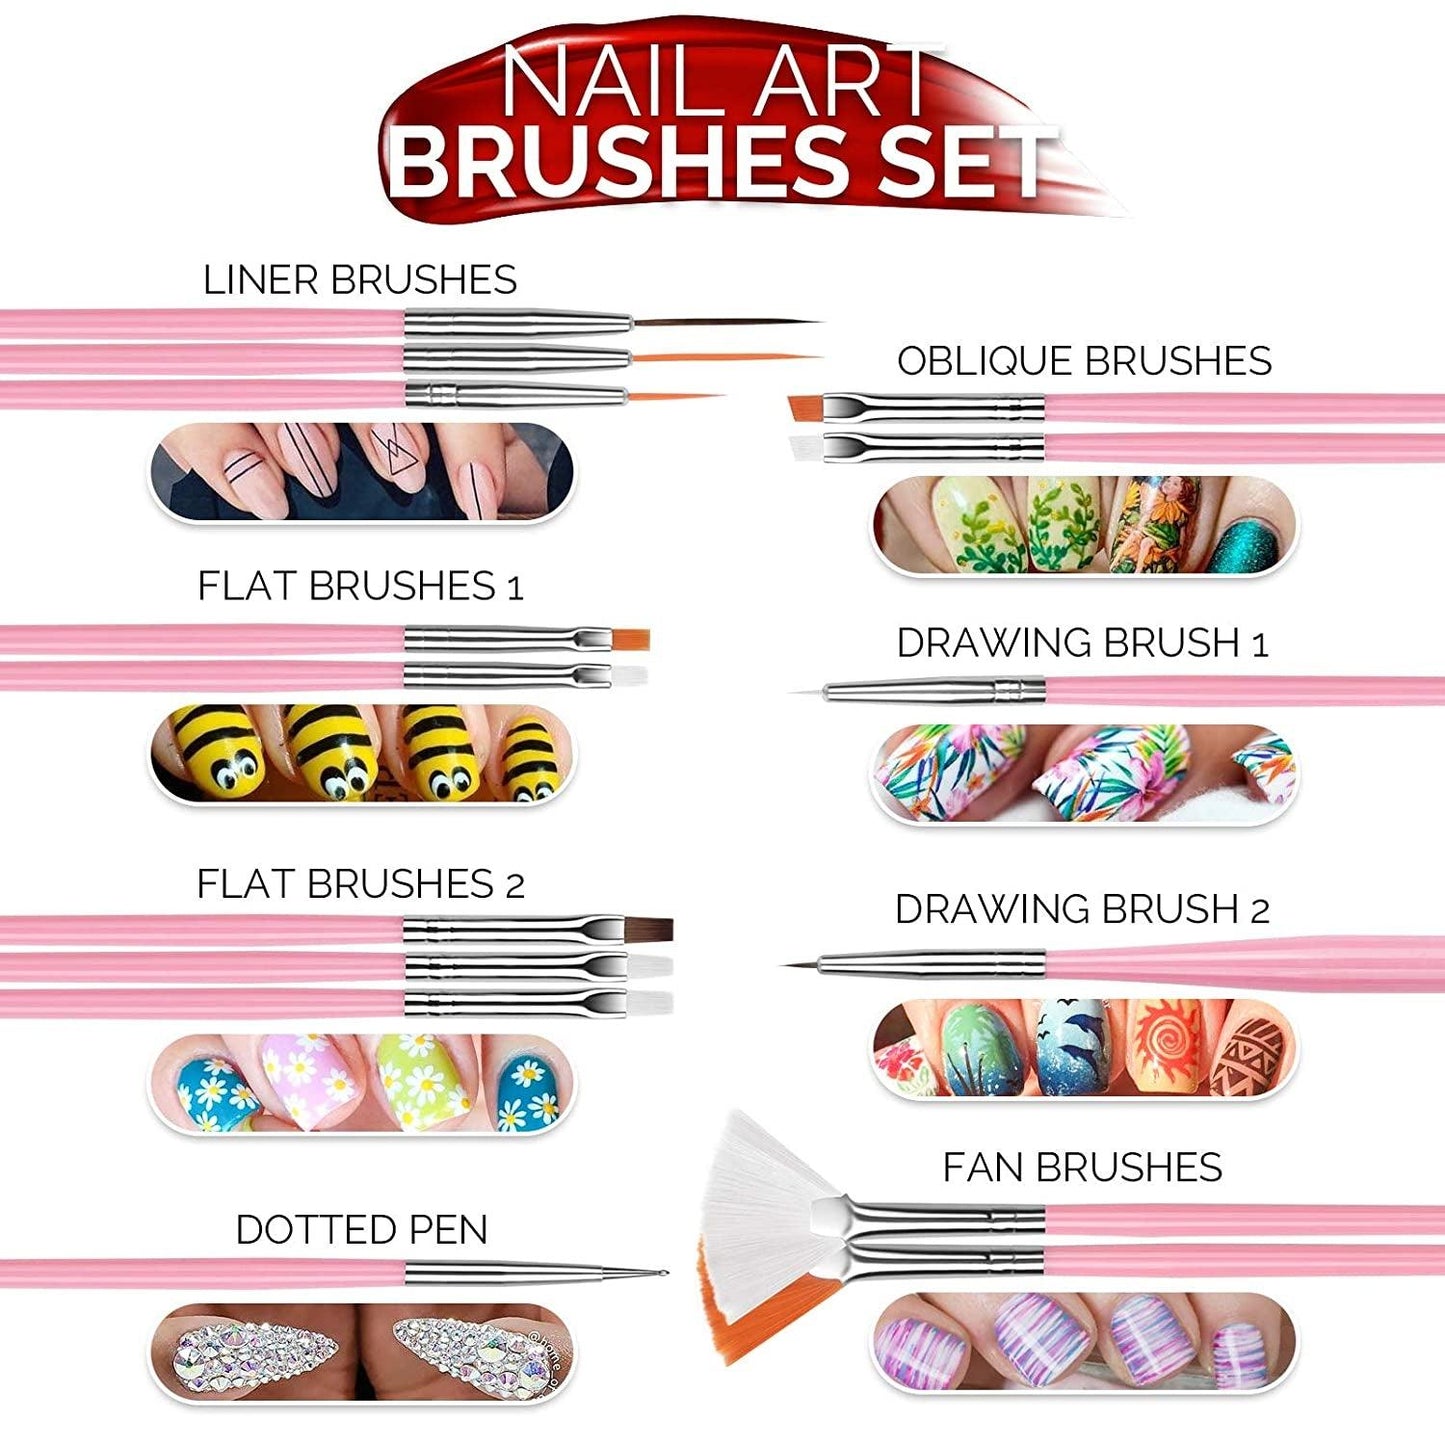 Beginners, Nail Art Supplies with Nail Art Brushes, Nail Dotting Tools, Nail Art Stickers - WoodArtSupply